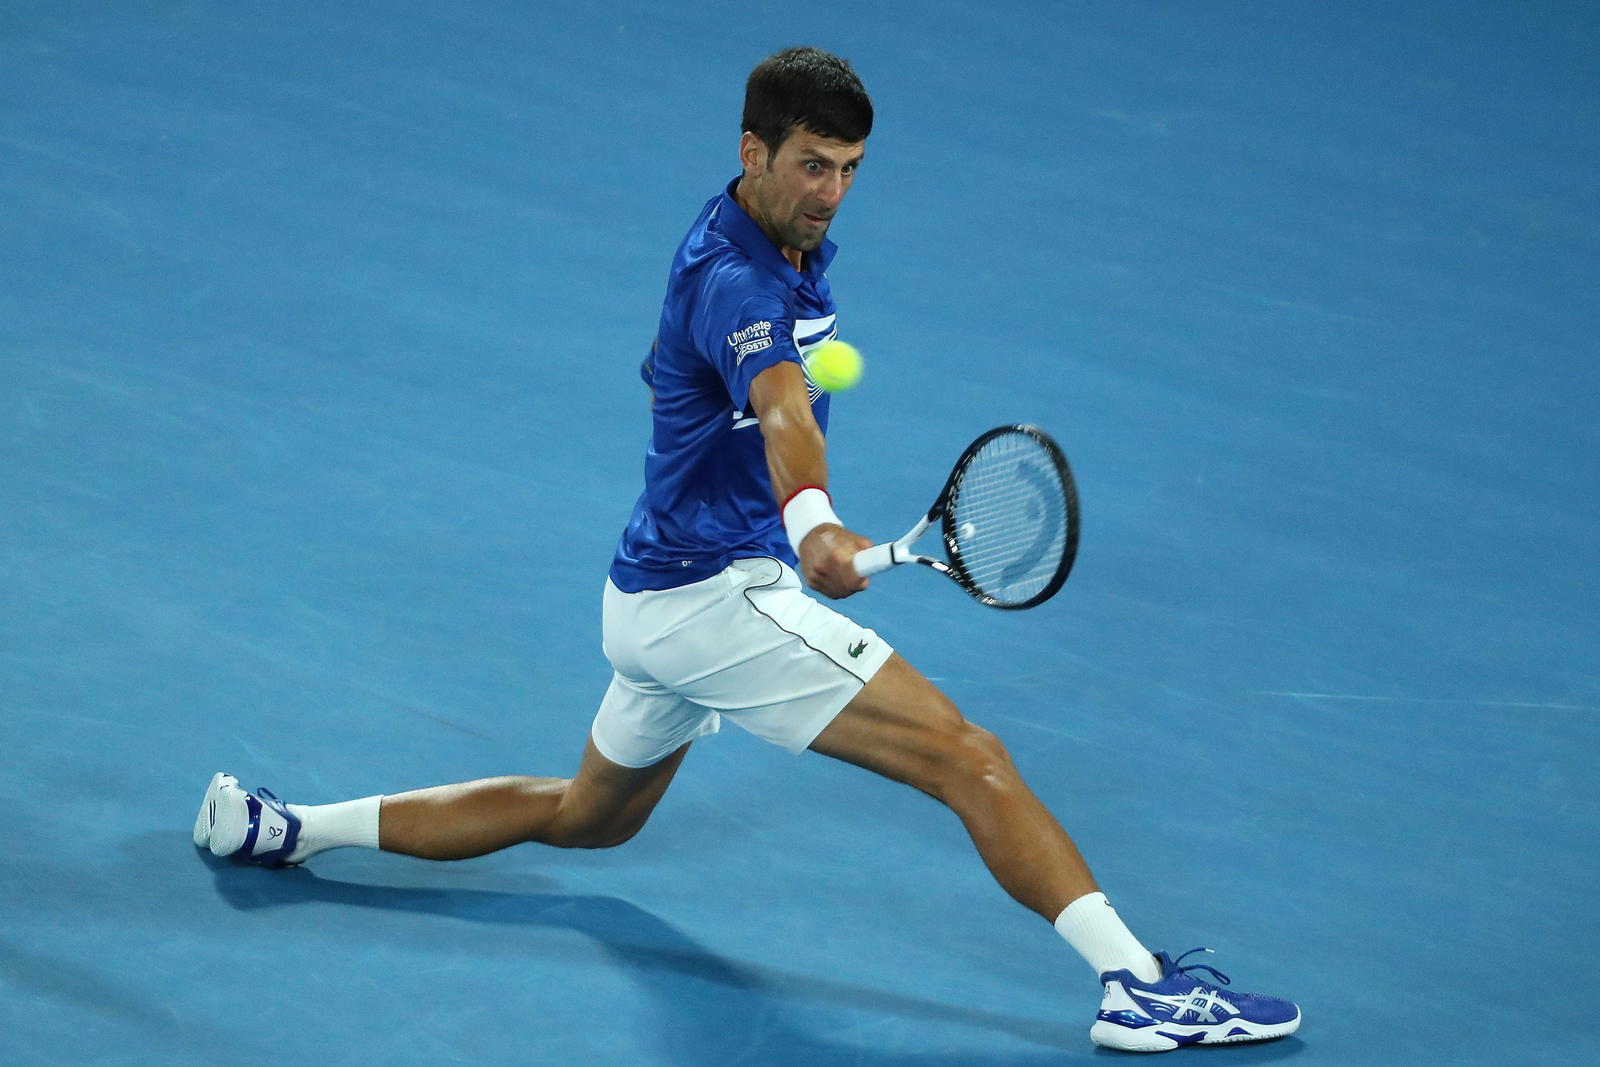 Novak Djokovic es el favorito para llevarse el torneo, sería el sexto título del serbio en Indian Wells, algo que nadie ha logrado.